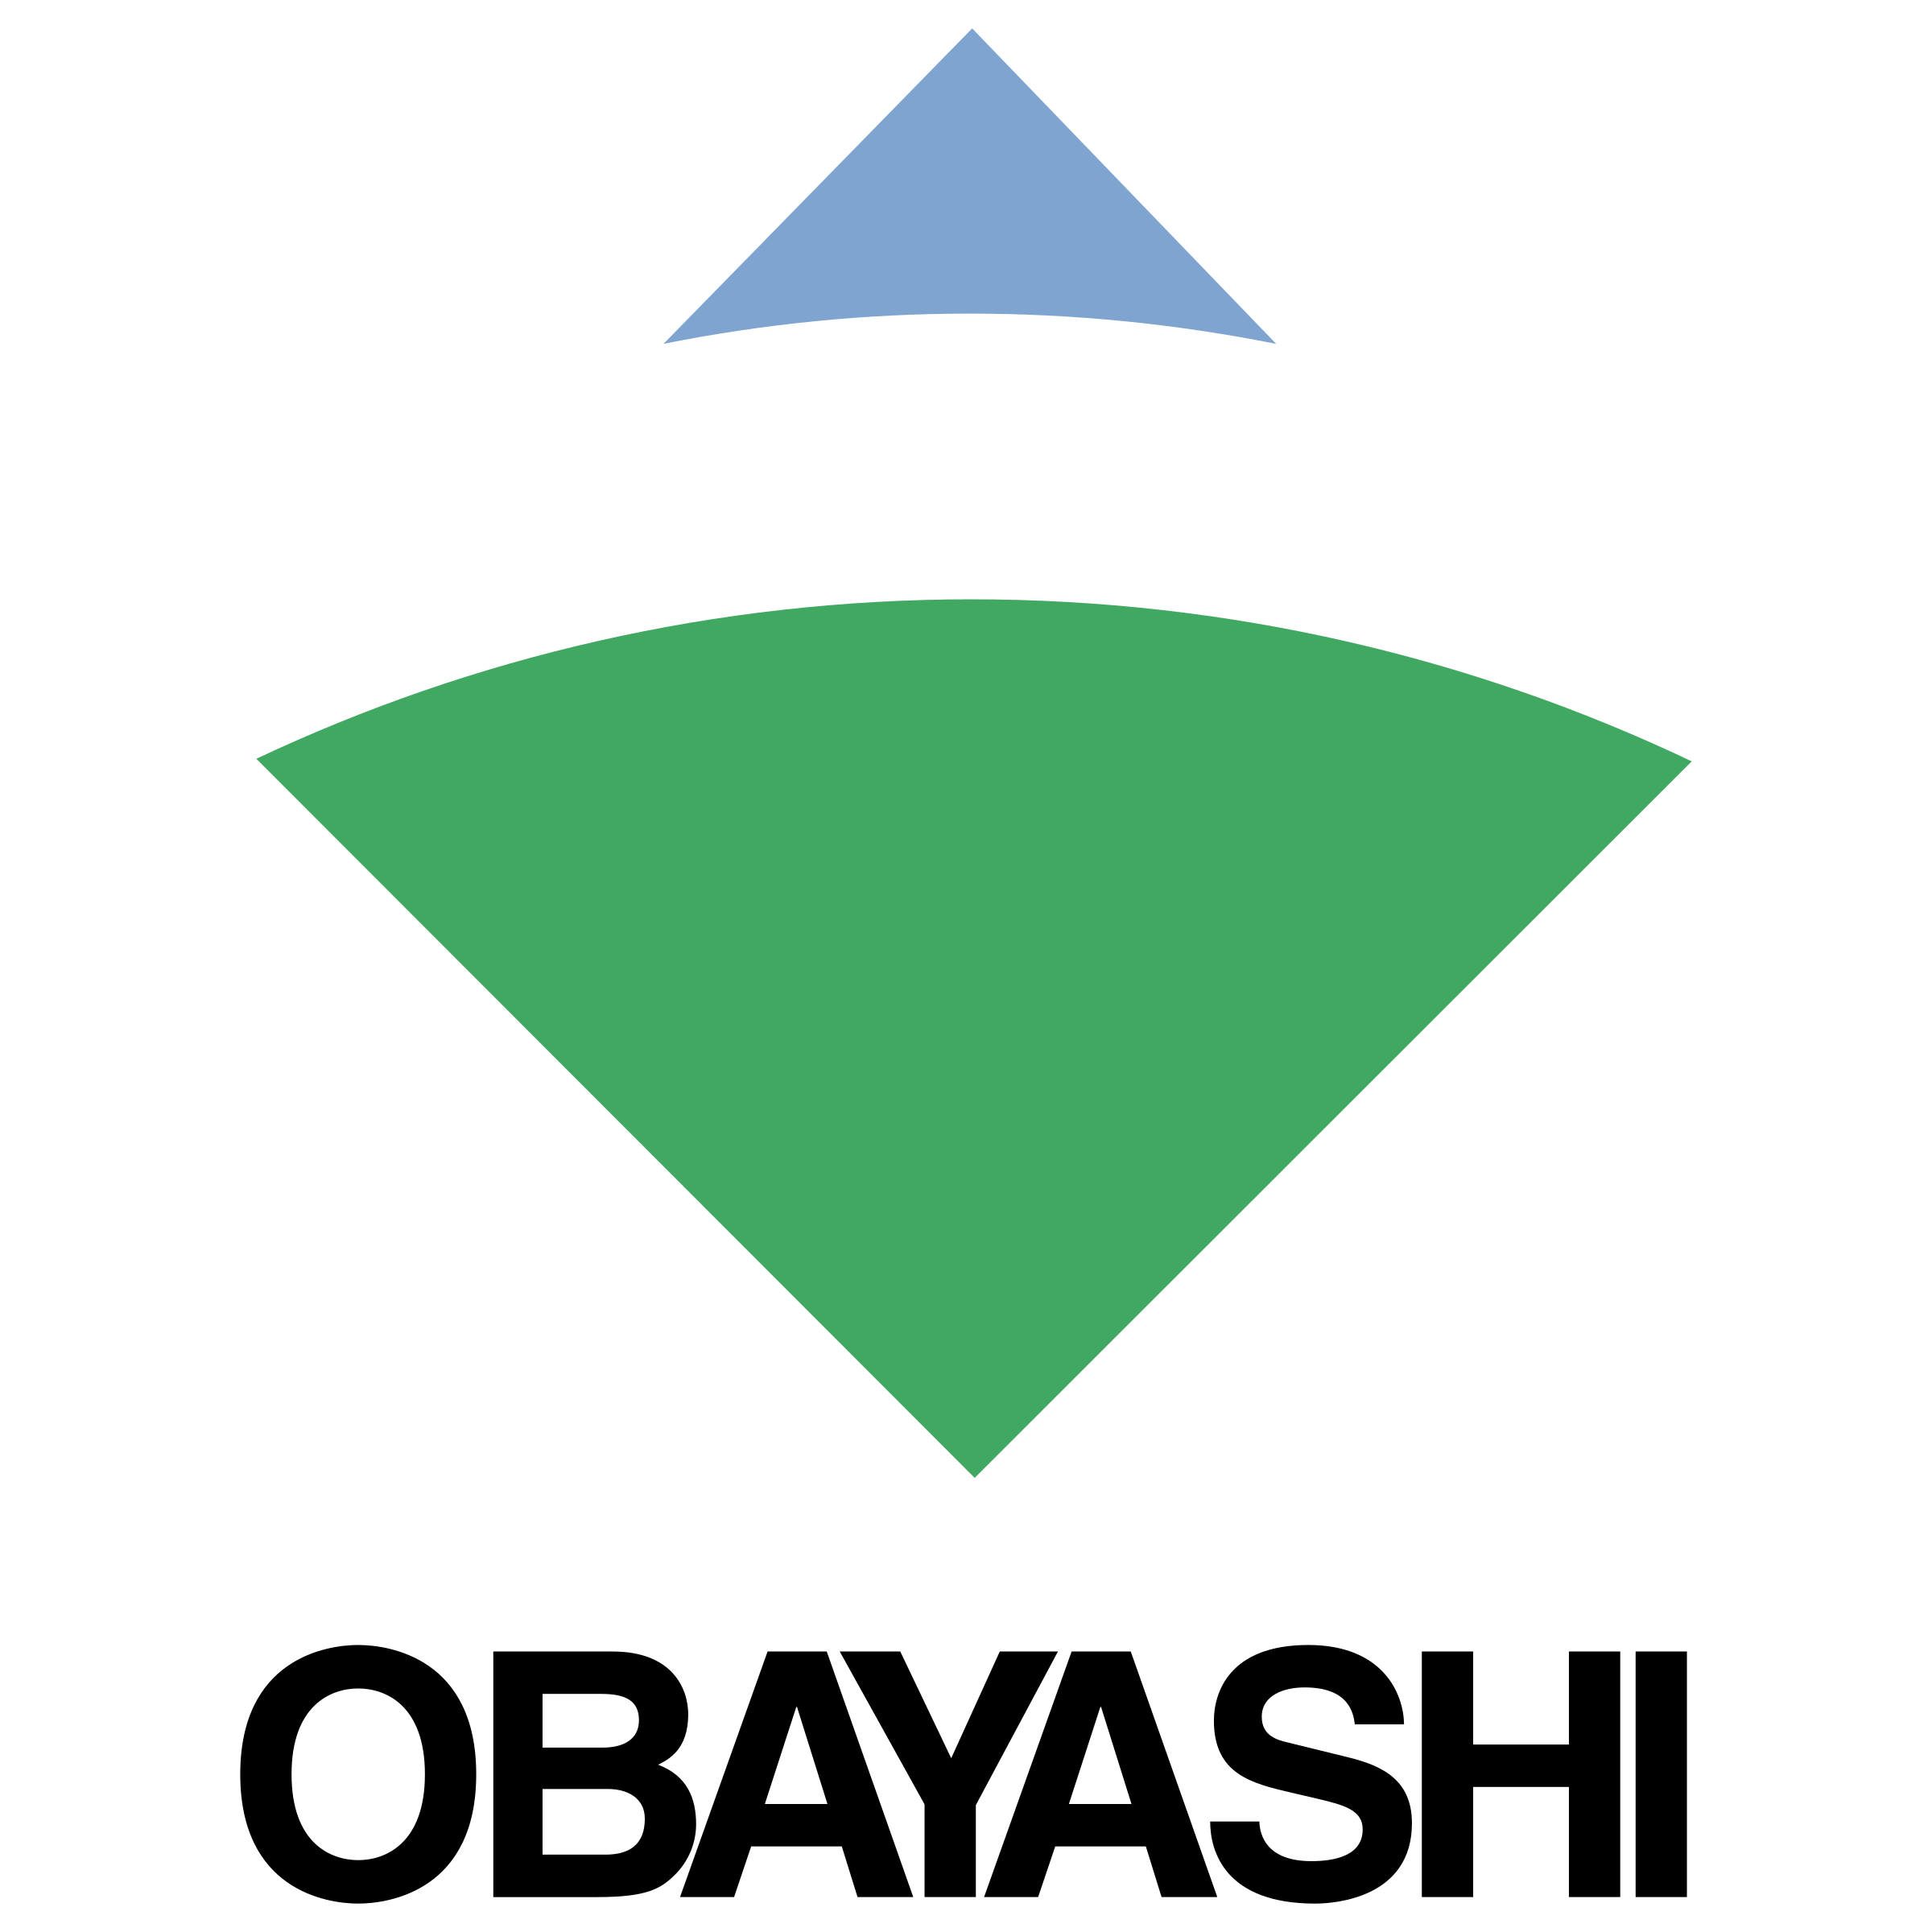 obayashi-logo-png-transparent